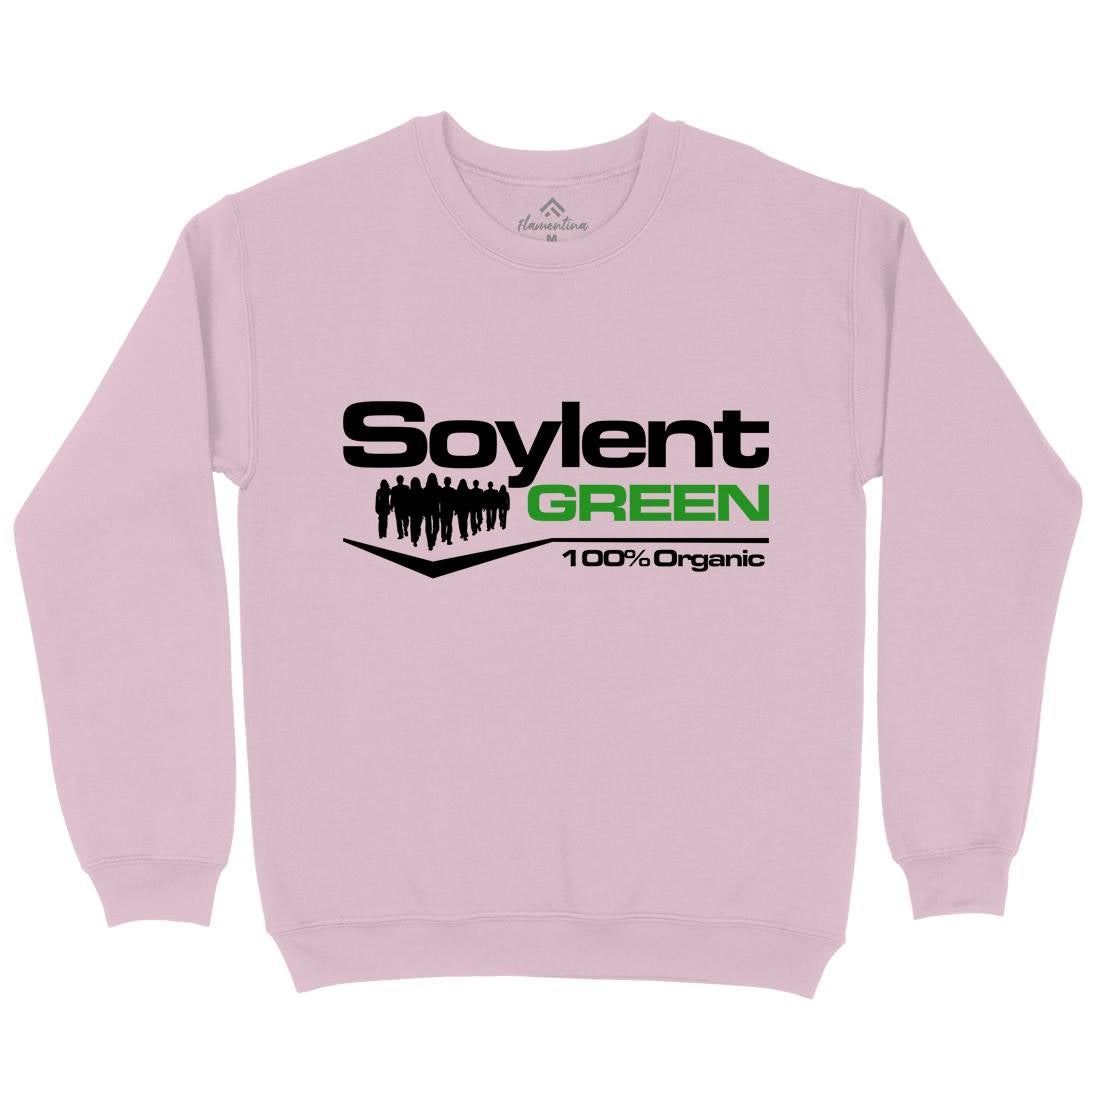 Soylent Green Kids Crew Neck Sweatshirt Horror D410